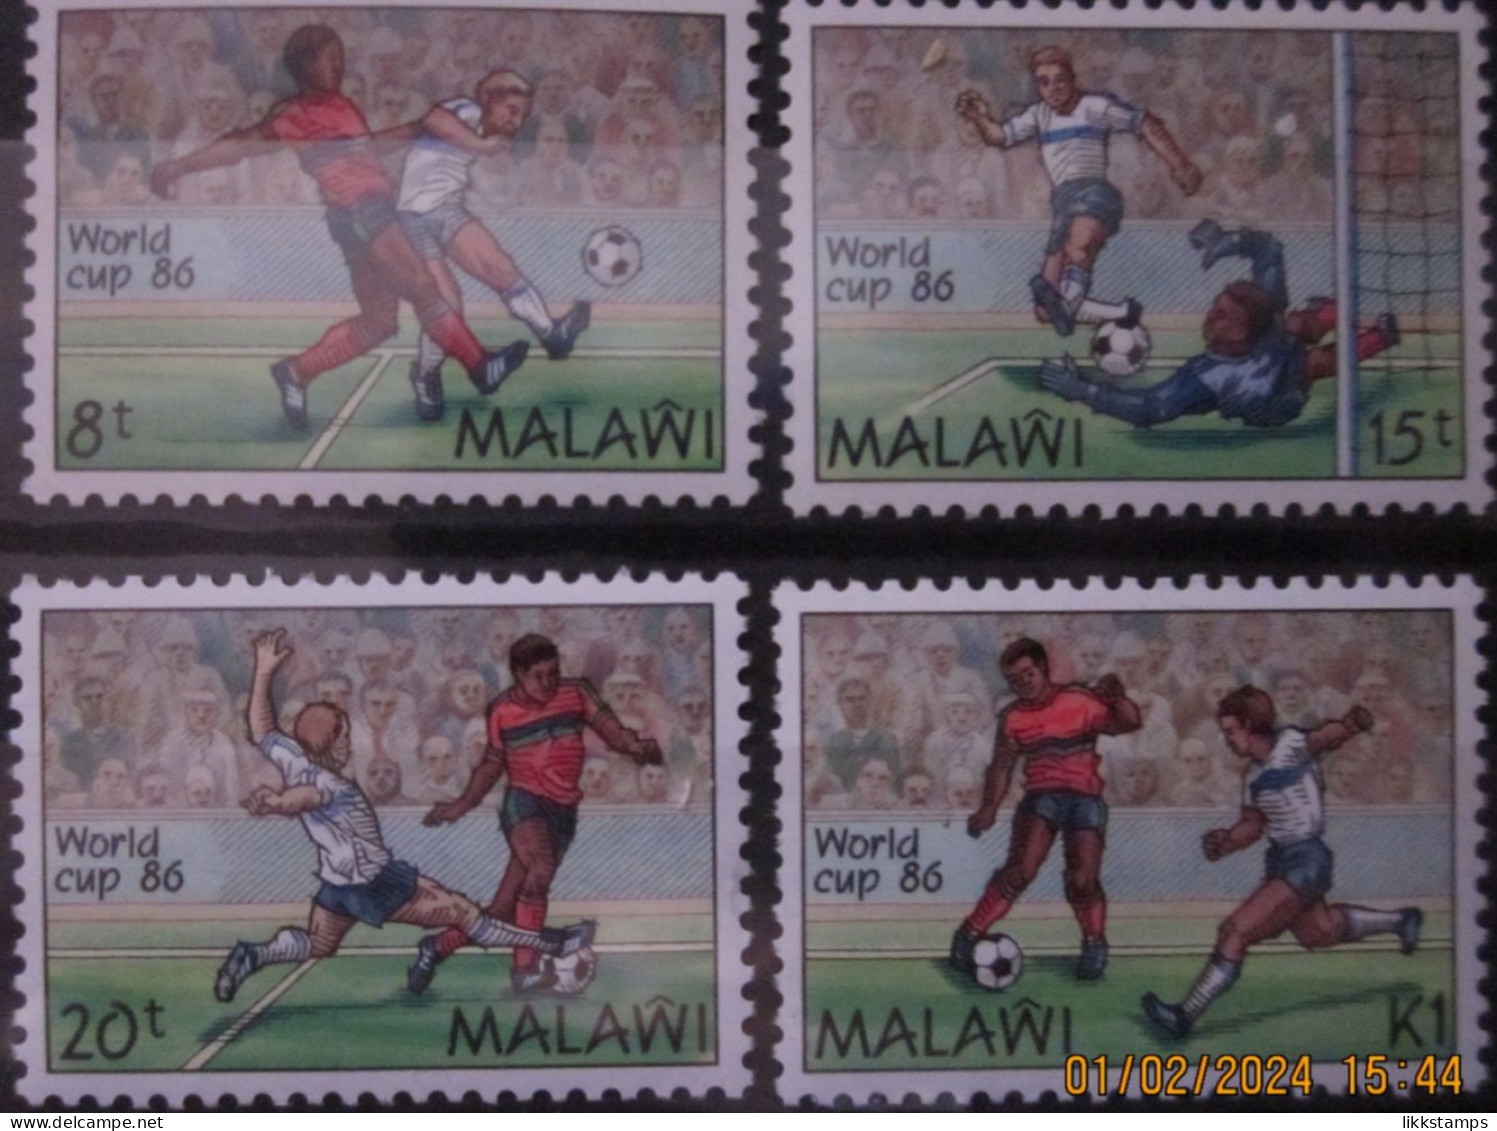 MALAWI 1986 ~ S.G. 746 - 749 ~ WORLD CUP FOOTBALL CHAMPIONSHIP. ~  MNH #03463 - Malawi (1964-...)